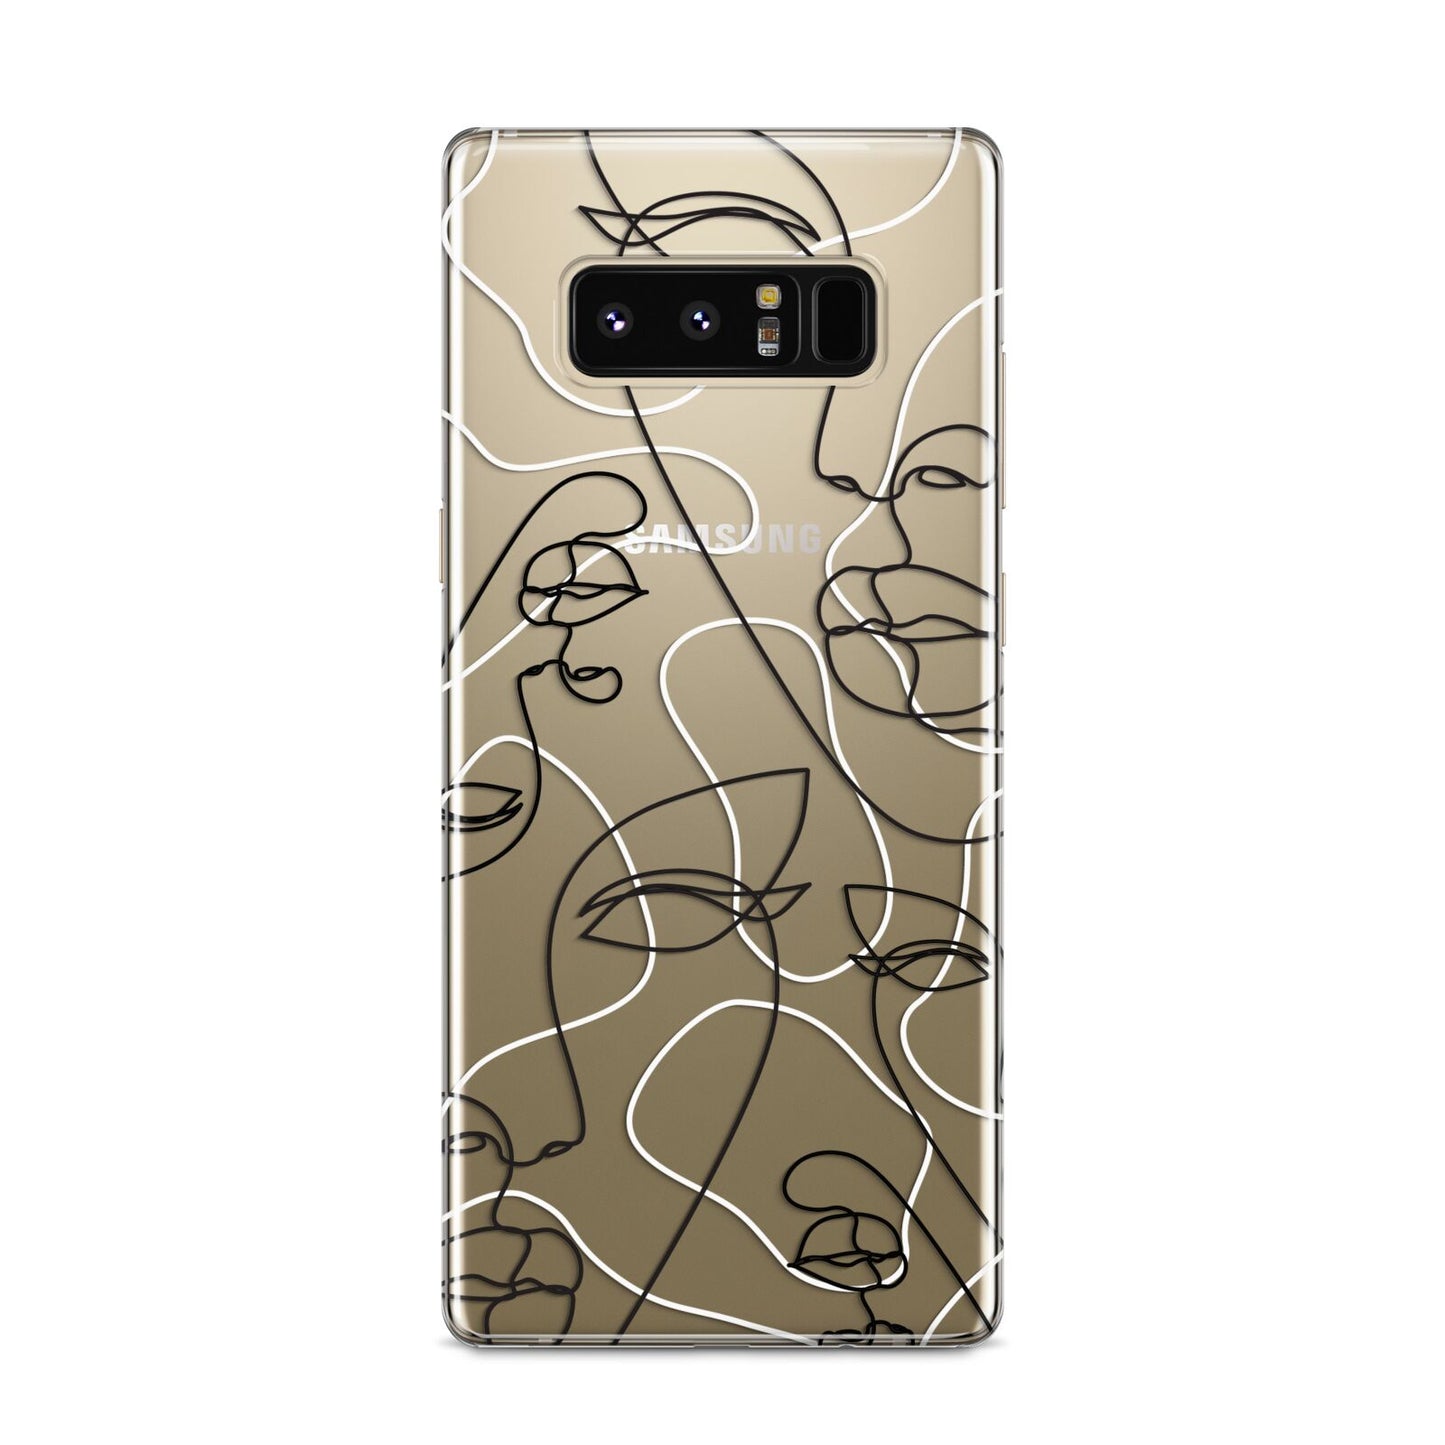 Abstract Face Samsung Galaxy S8 Case